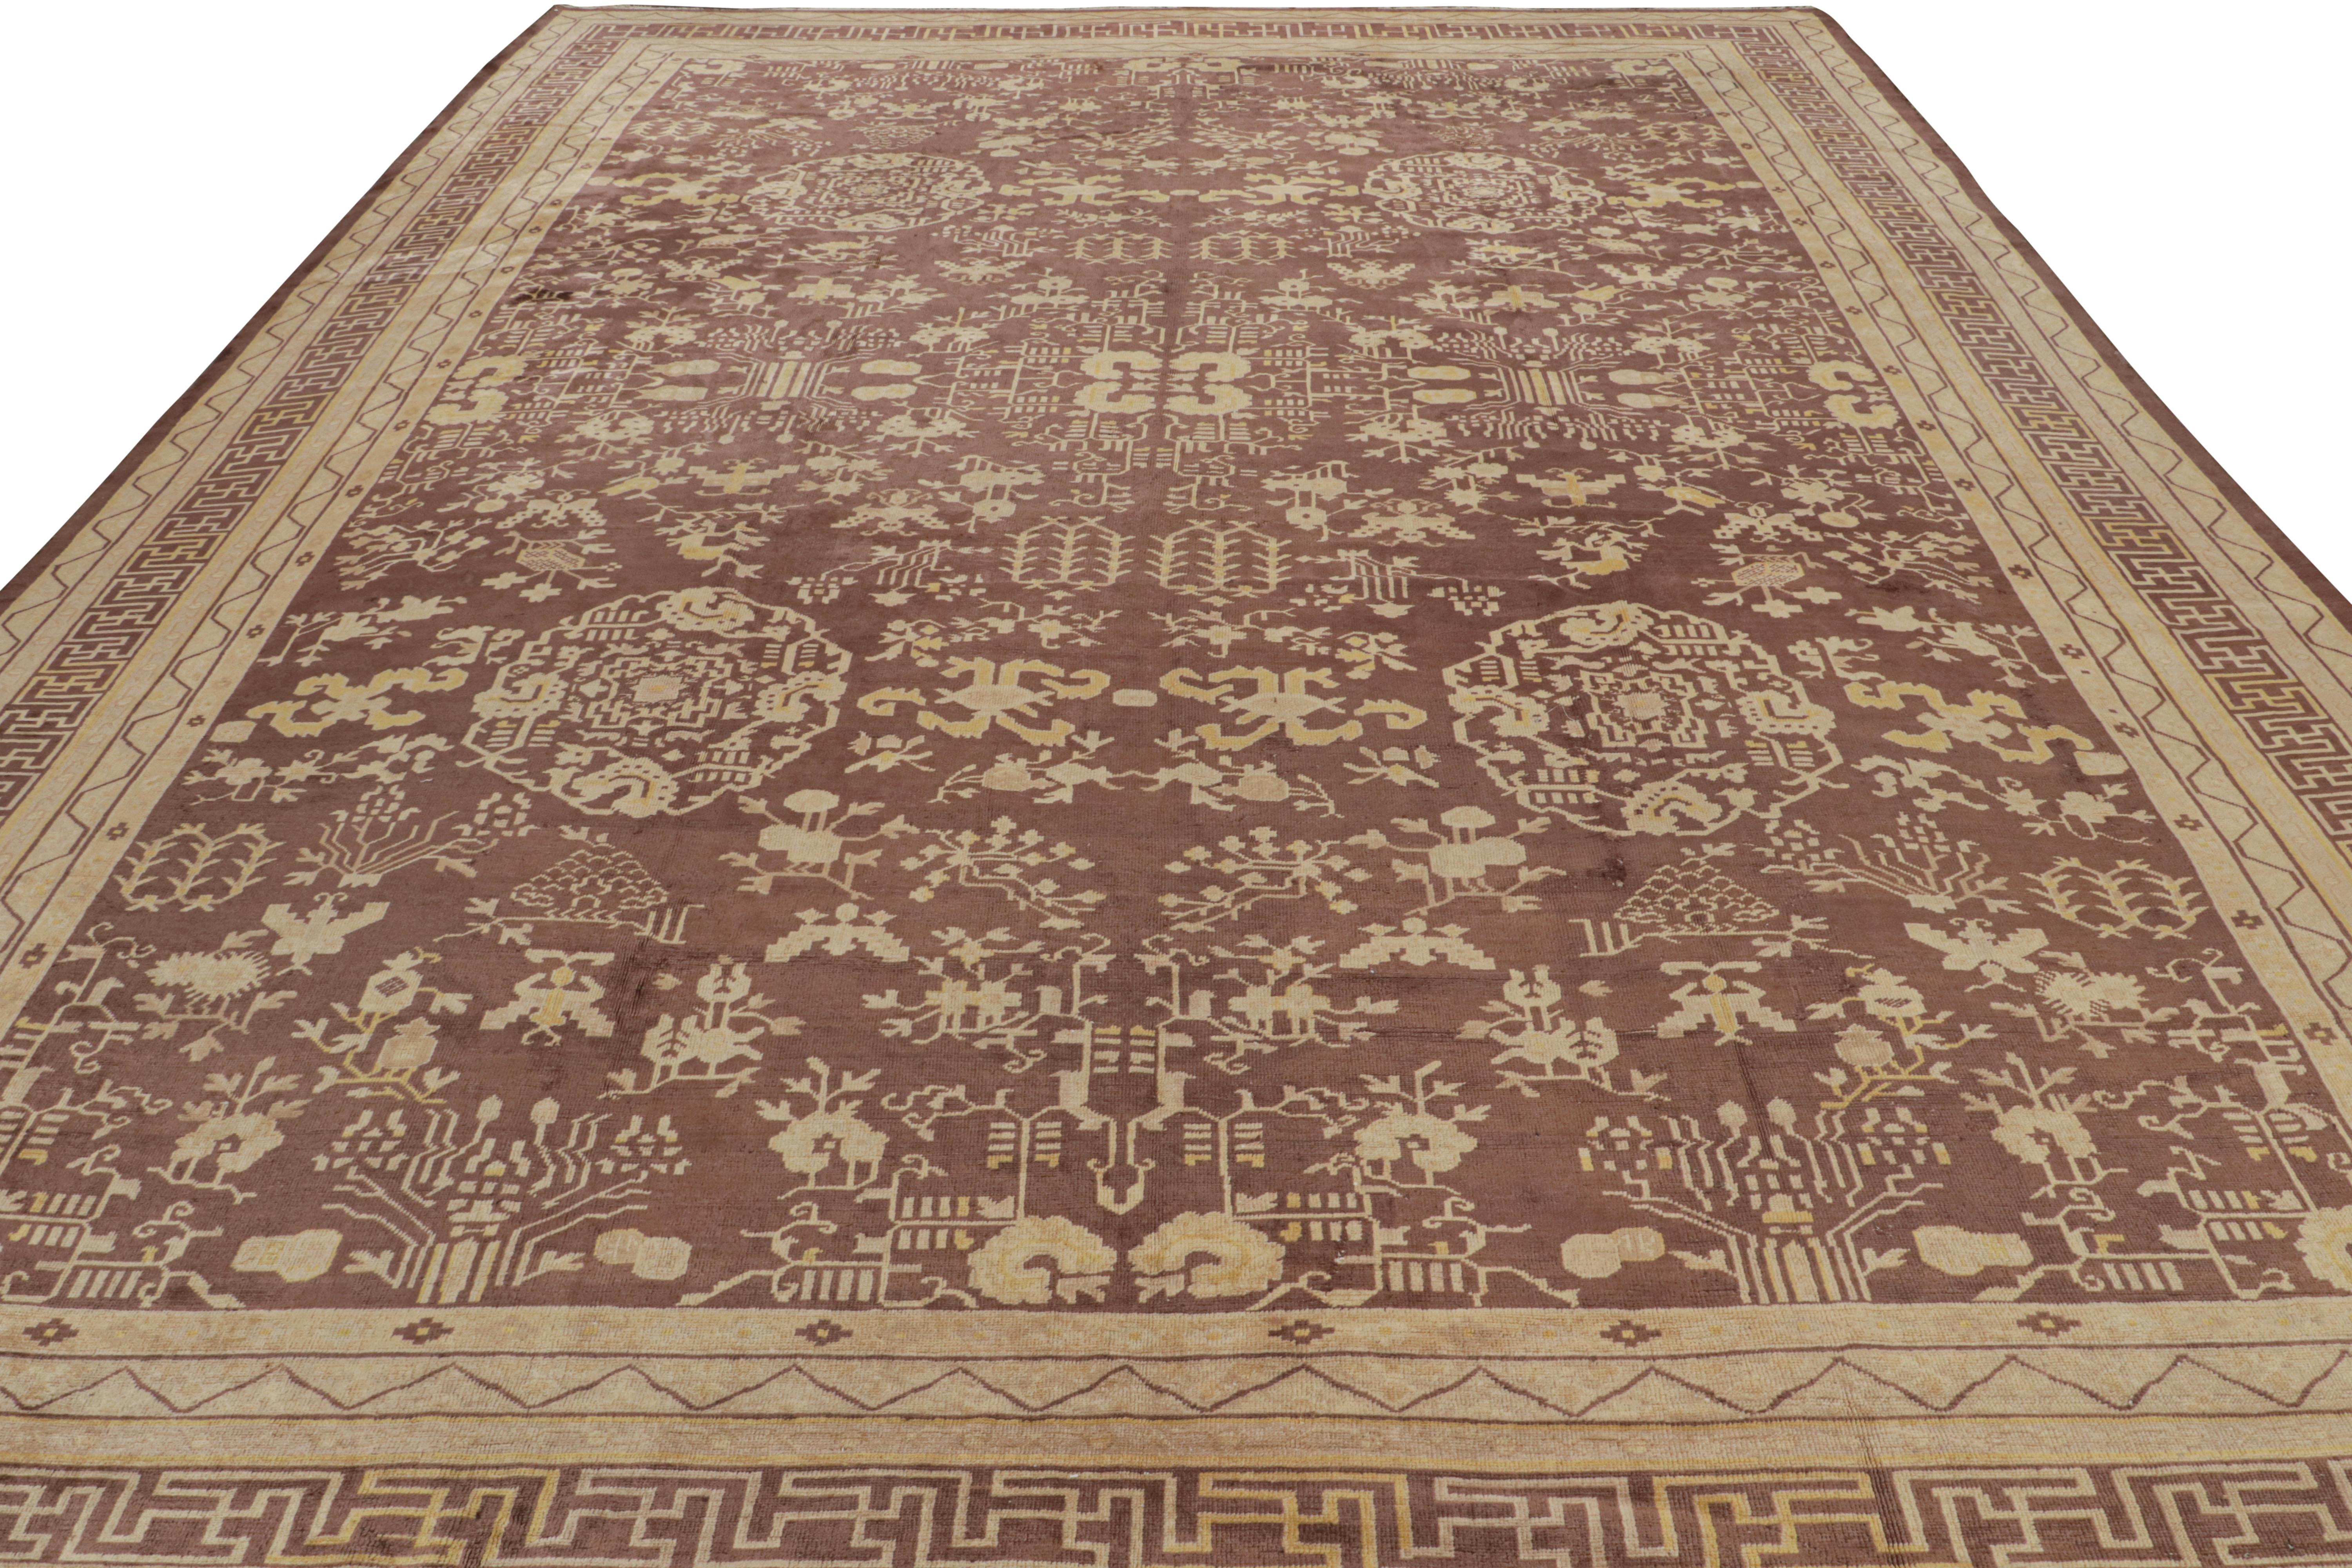 Der antike Samarkand-Teppich 12x16, handgeknüpft aus Wolle, stammt aus der Zeit um 1920-1930 und ist der jüngste Neuzugang in Rug & Kilims Repertoire an antiken Kurationen.

Über das Design:

Dieser Teppich ist eines der seltensten Werke seiner